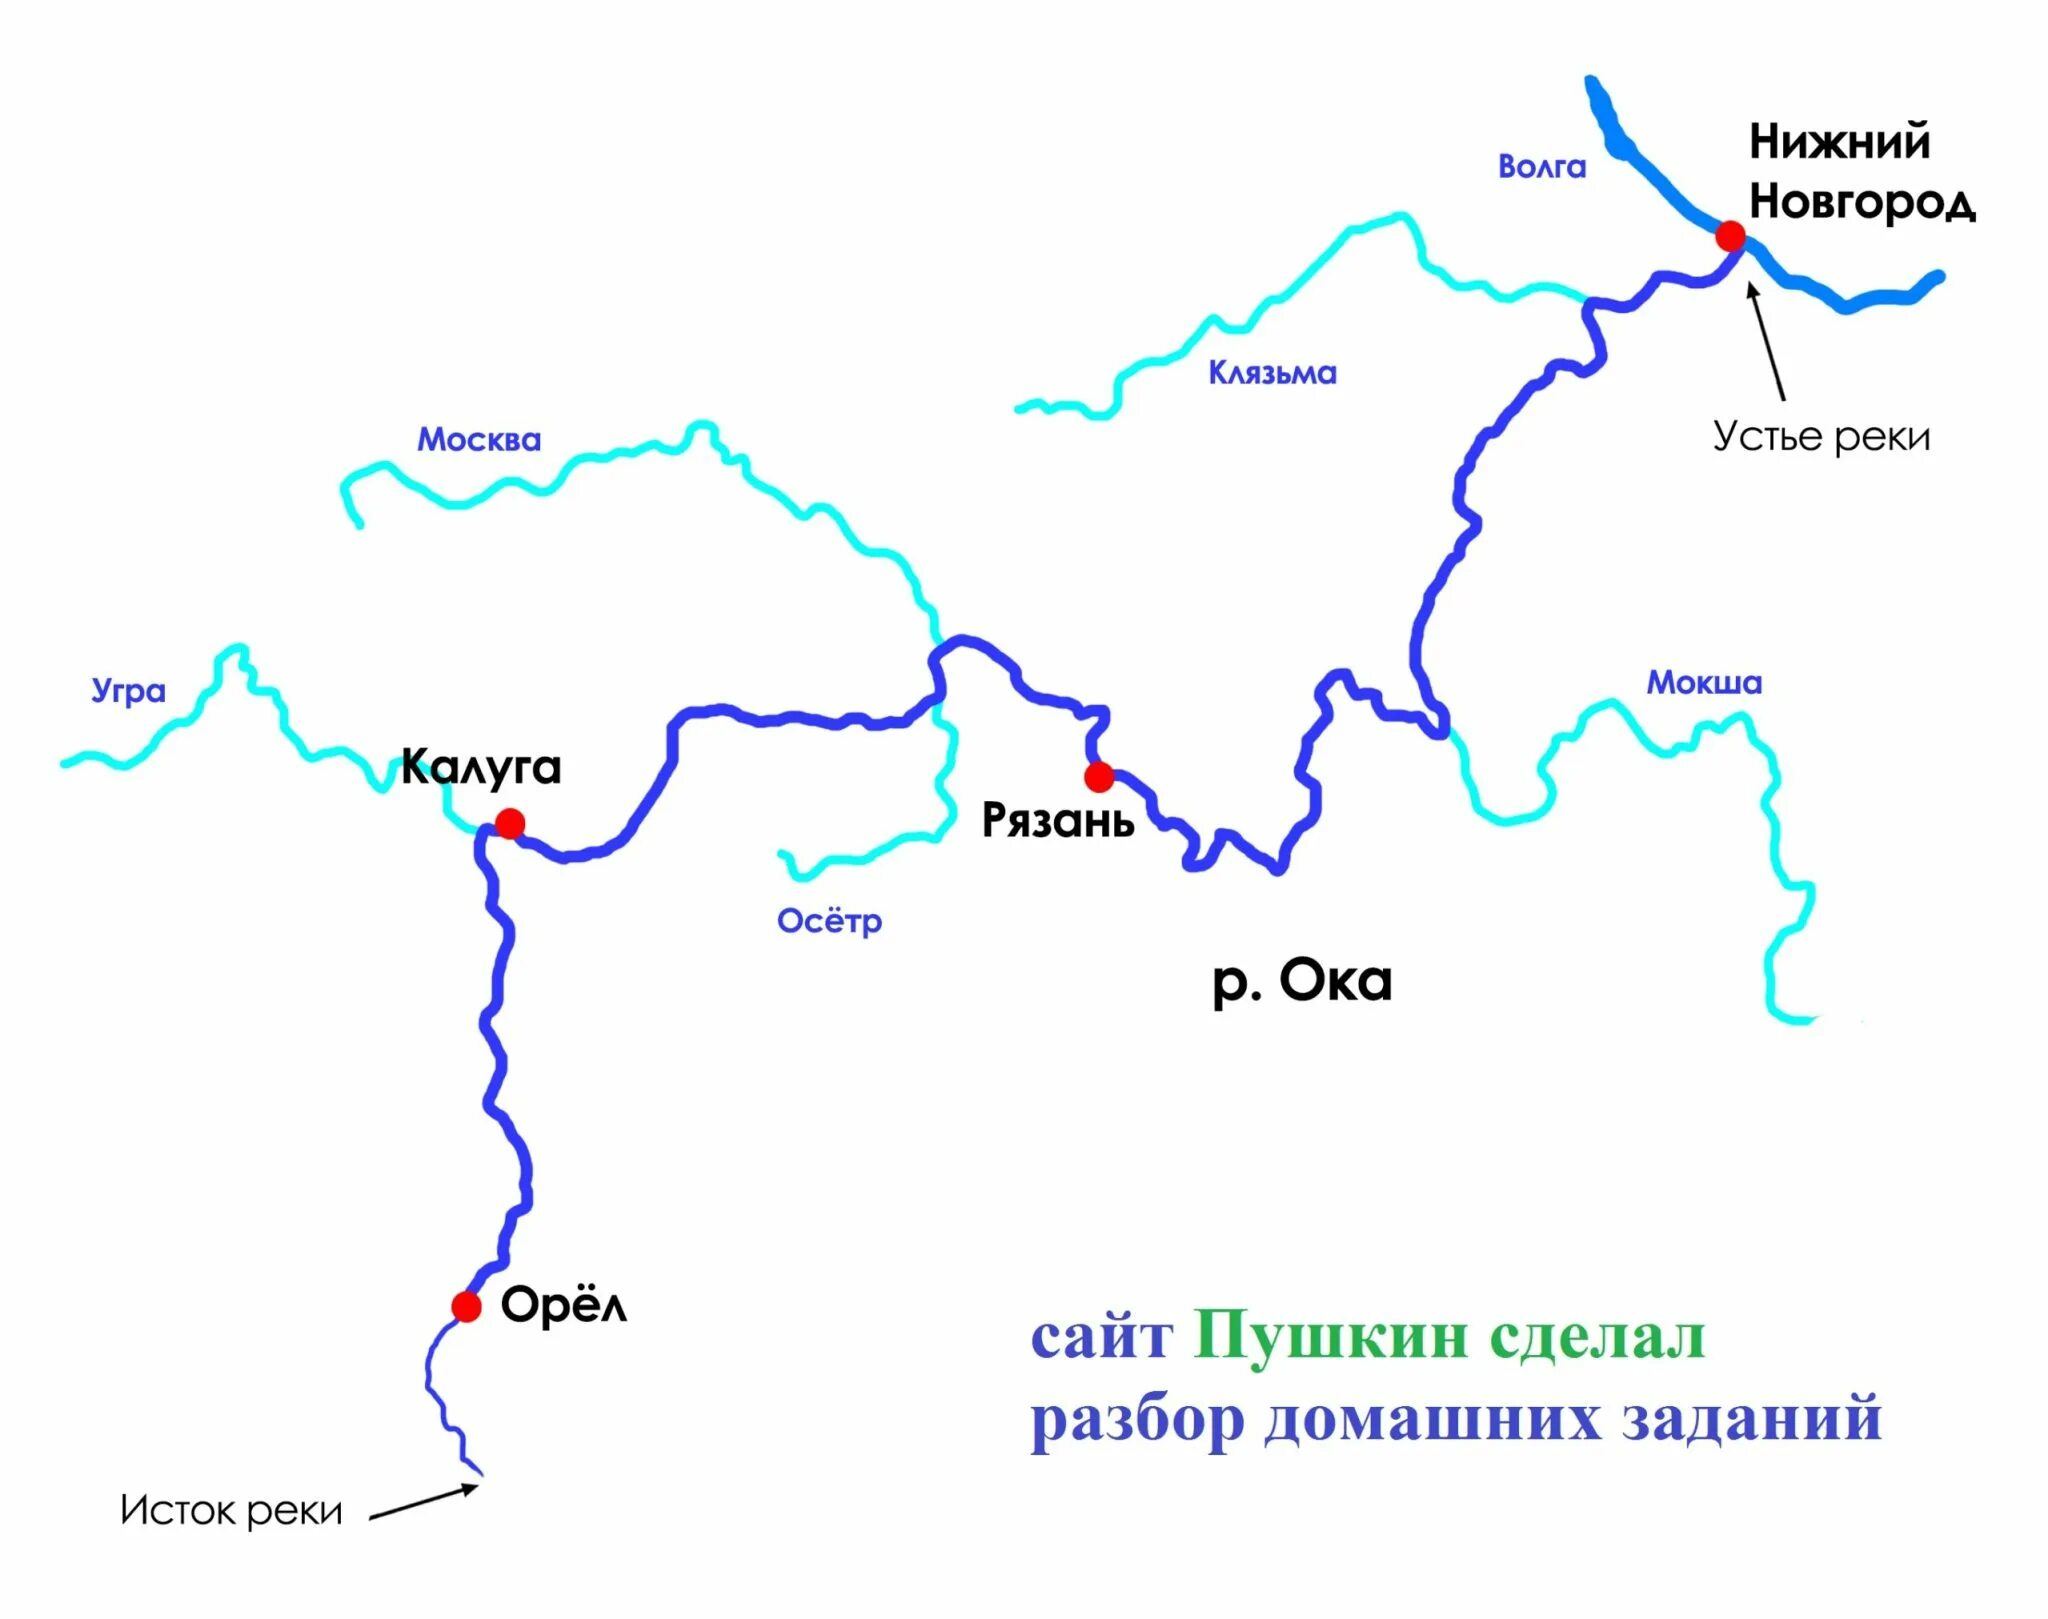 Крупные притоки река ока. Схема реки Оки. Исток реки Ока на карте. Схема реки Ока от истока до устья. Схема Речной системы реки Оки.